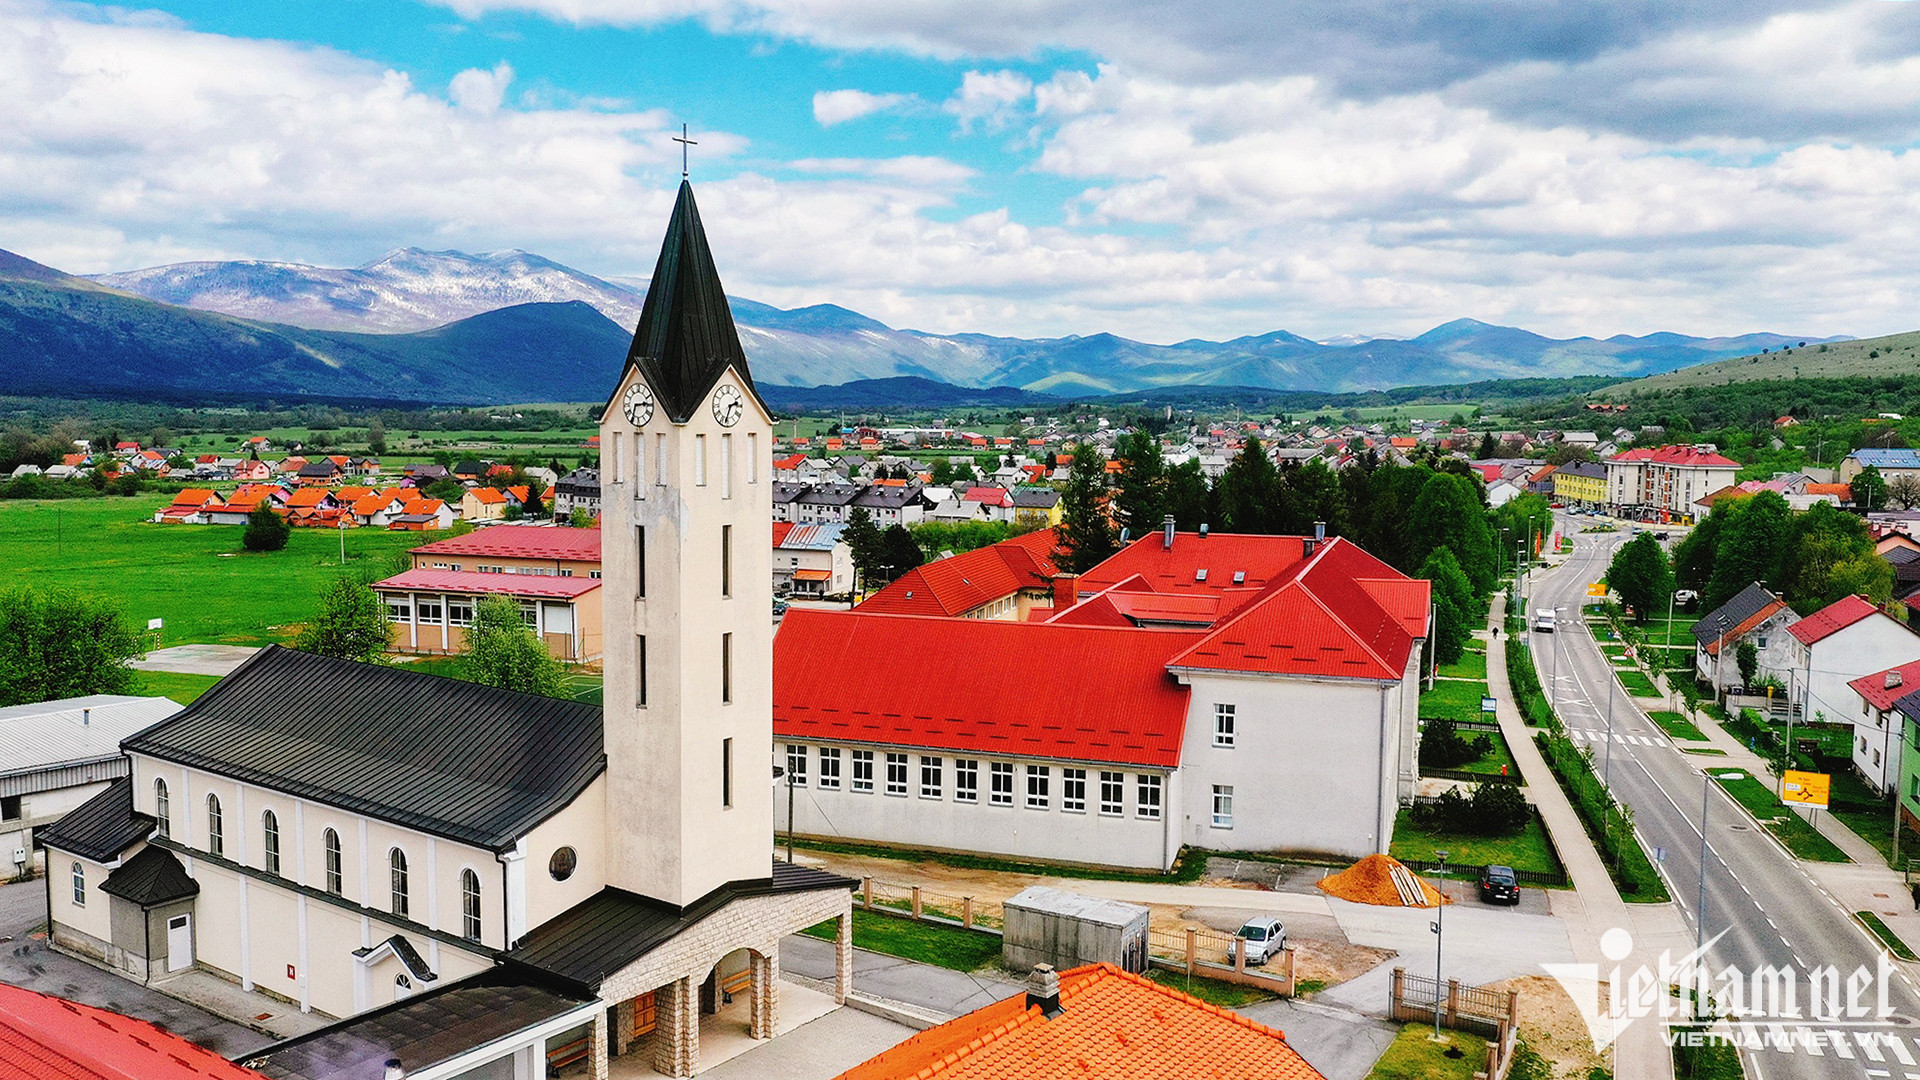 Mê mẩn với cảnh sắc thị trấn cổ Bled ở Slovenia